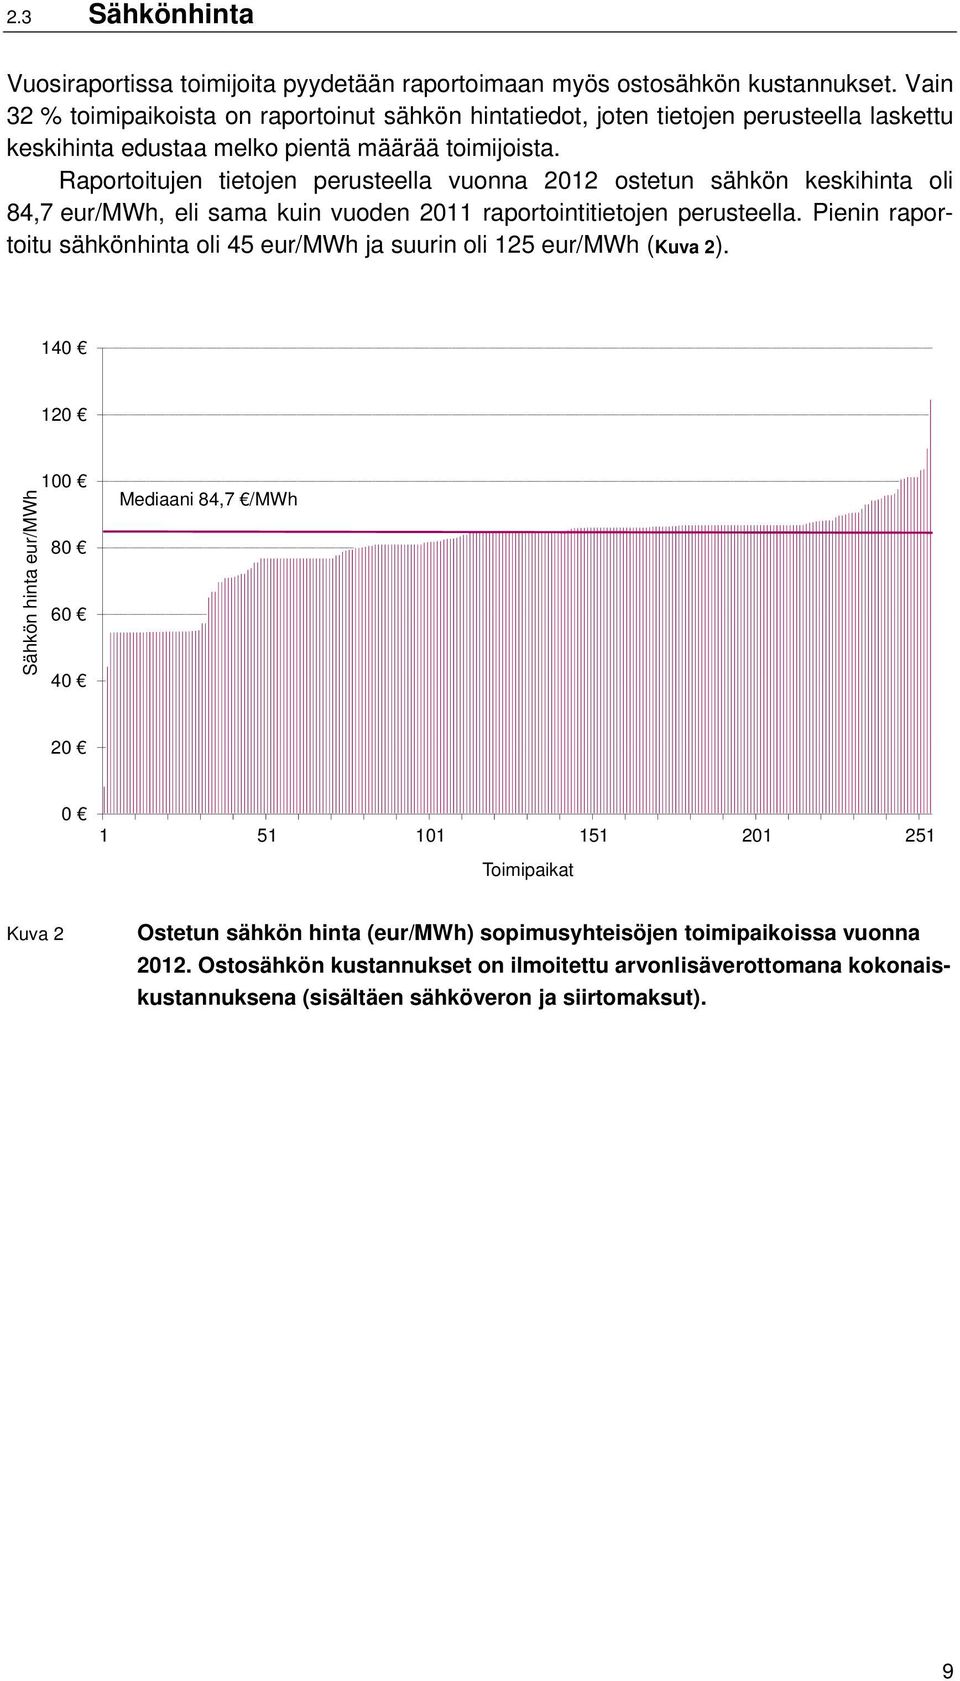 Raportoitujen tietojen perusteella vuonna 2012 ostetun sähkön keskihinta oli 84,7 eur/mwh, eli sama kuin vuoden 2011 raportointitietojen perusteella.